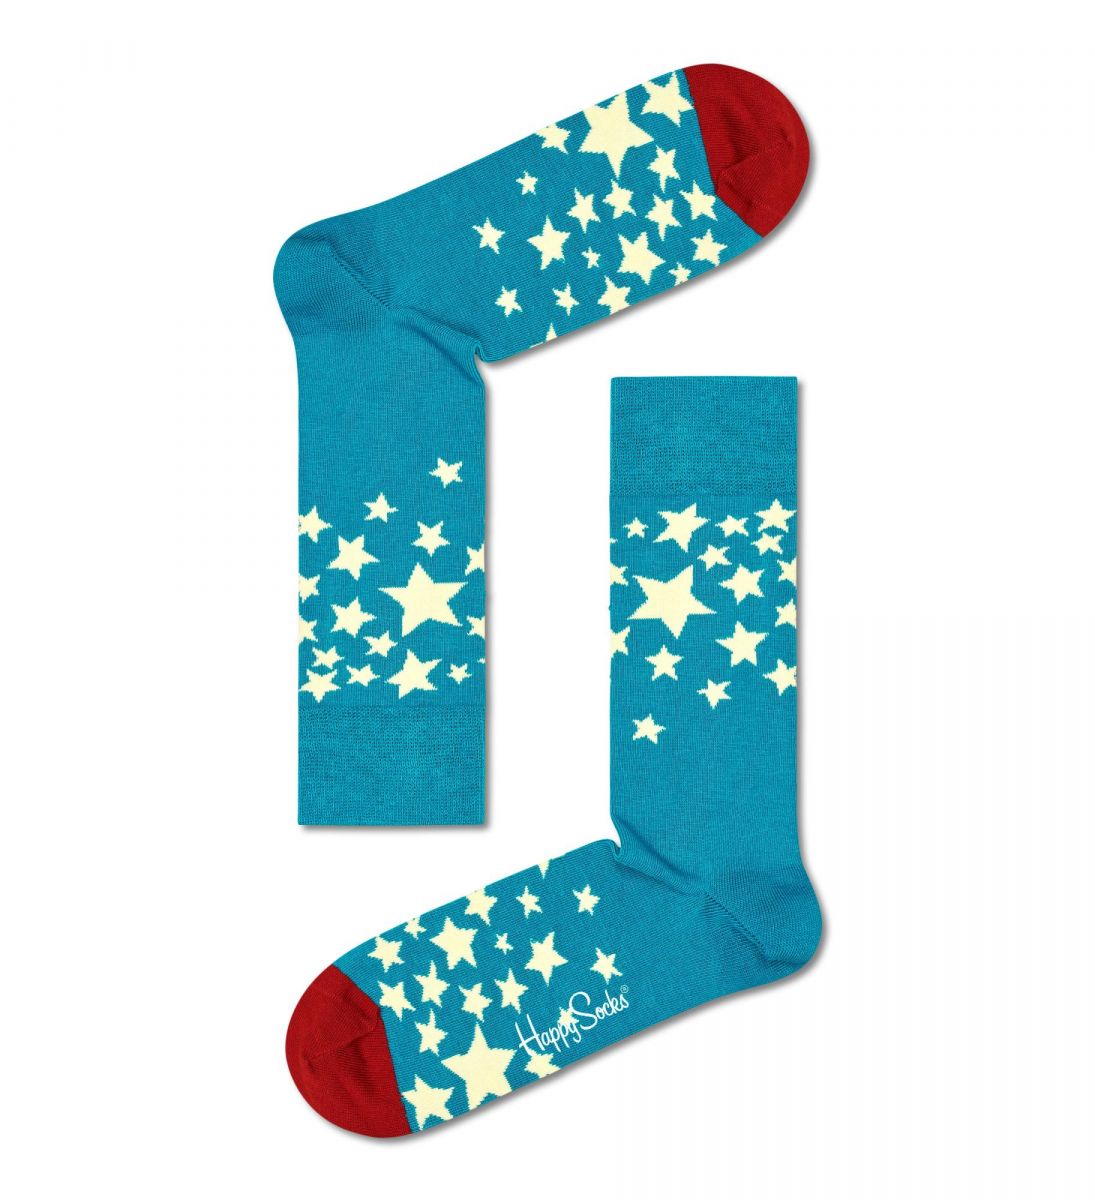 Носки унисекс Stars Sock со звездочками.